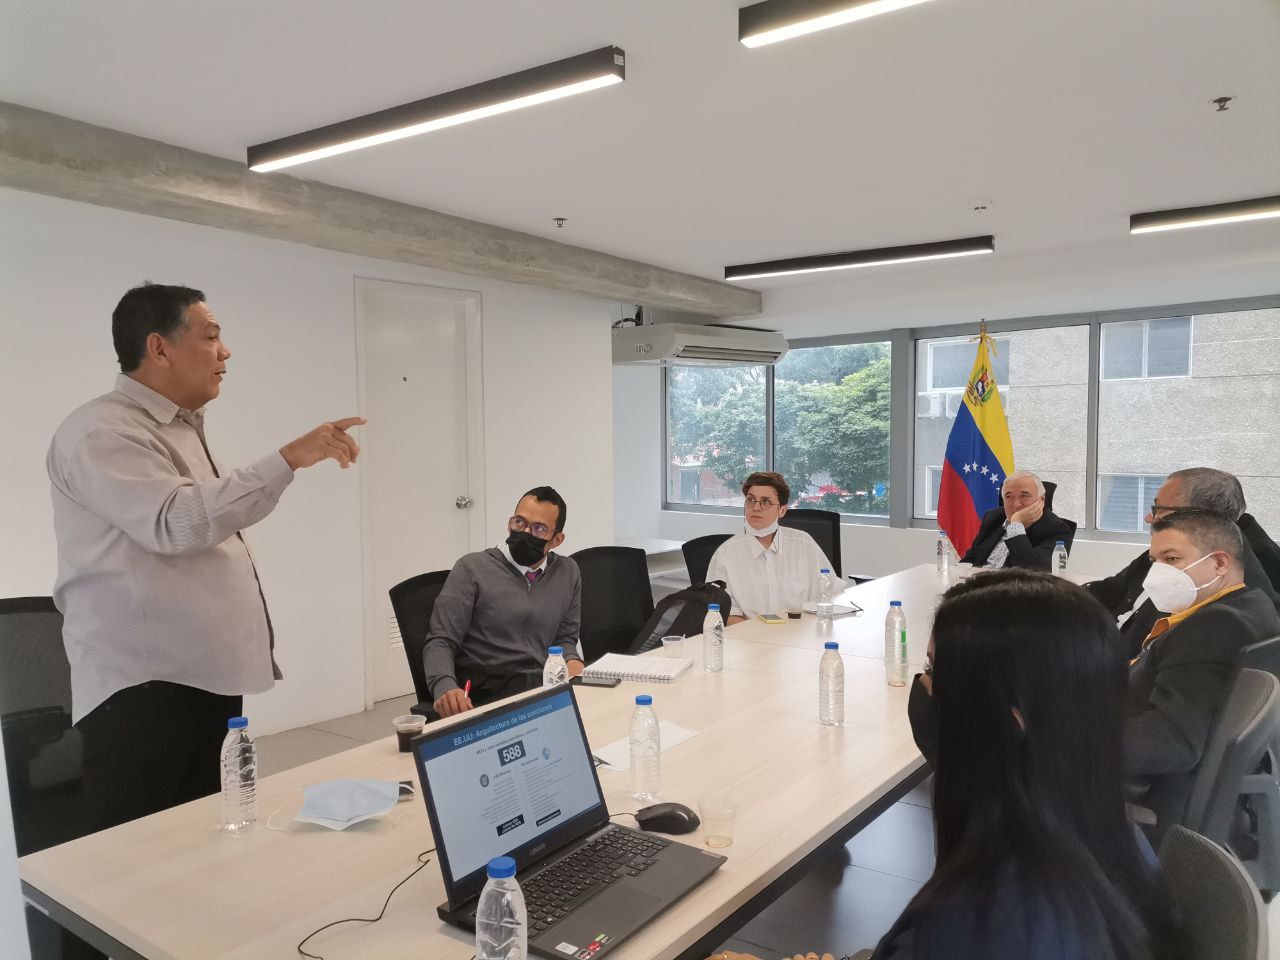 William presentando "Del bloqueo a la recuperación" el 8 de julio en el Centro Internacional de Inversión Productiva al equipo del Foro y demás participantes de Venezuela